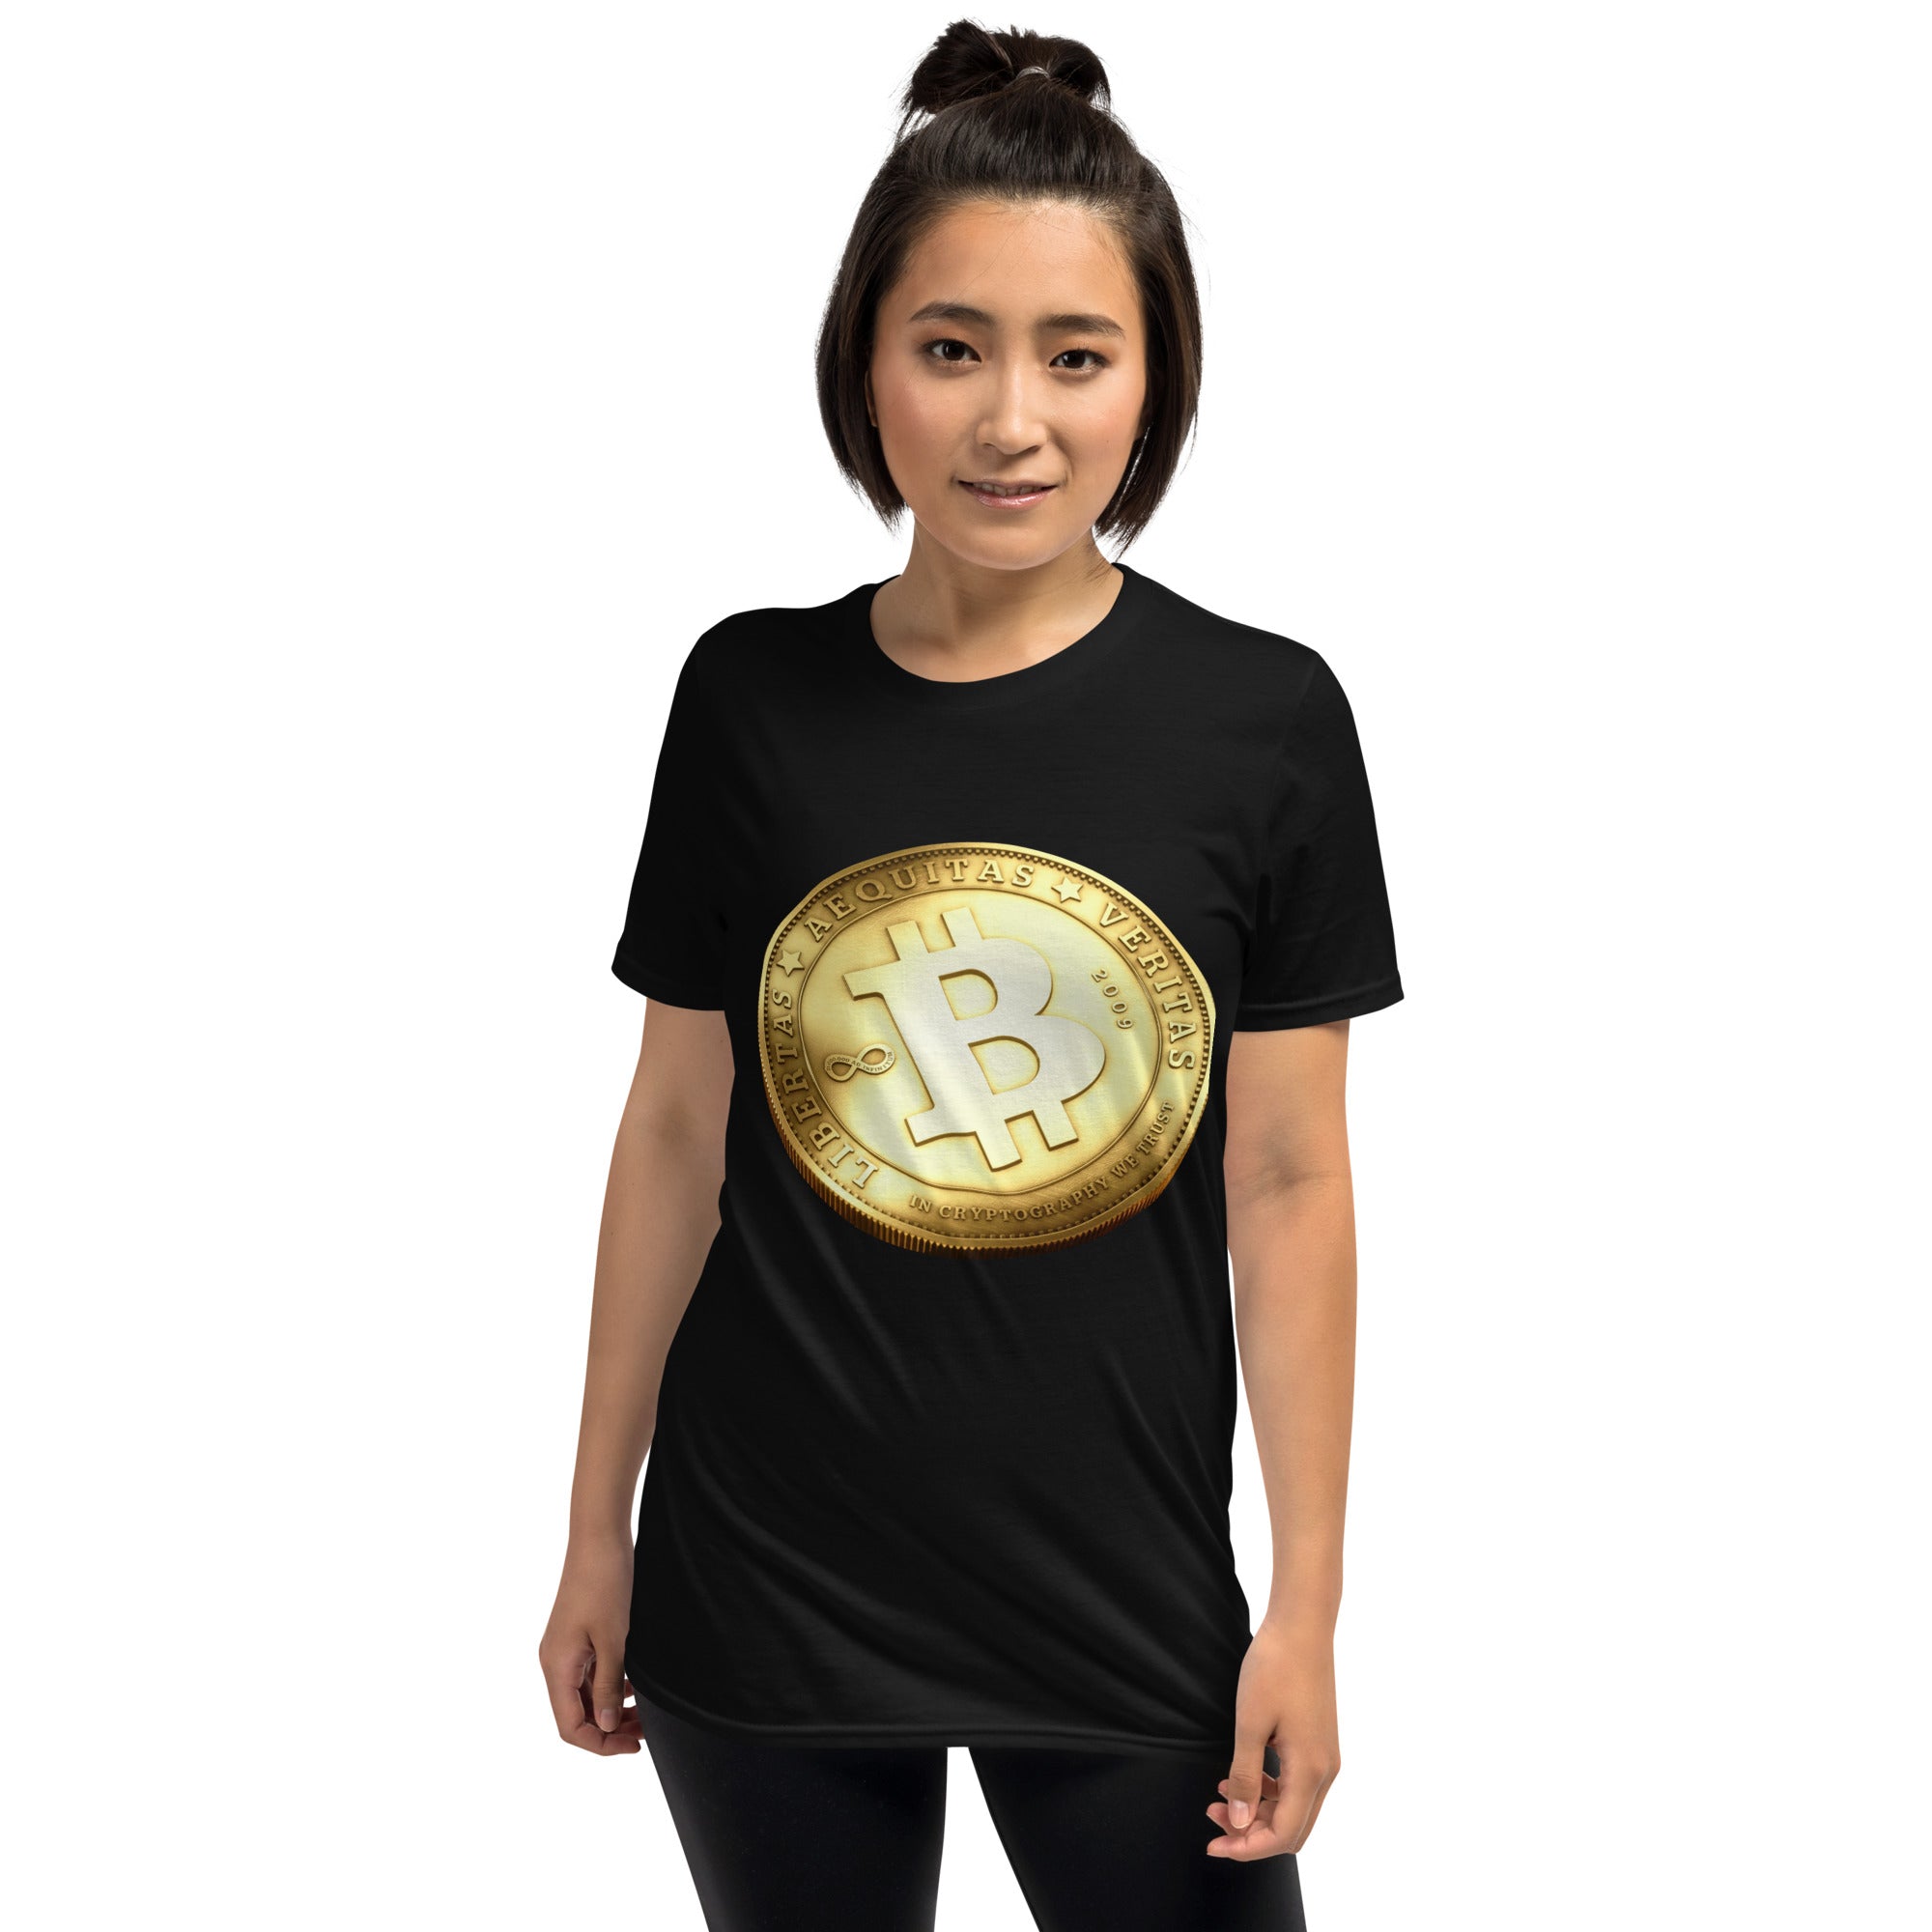 Bitcoin Shirt